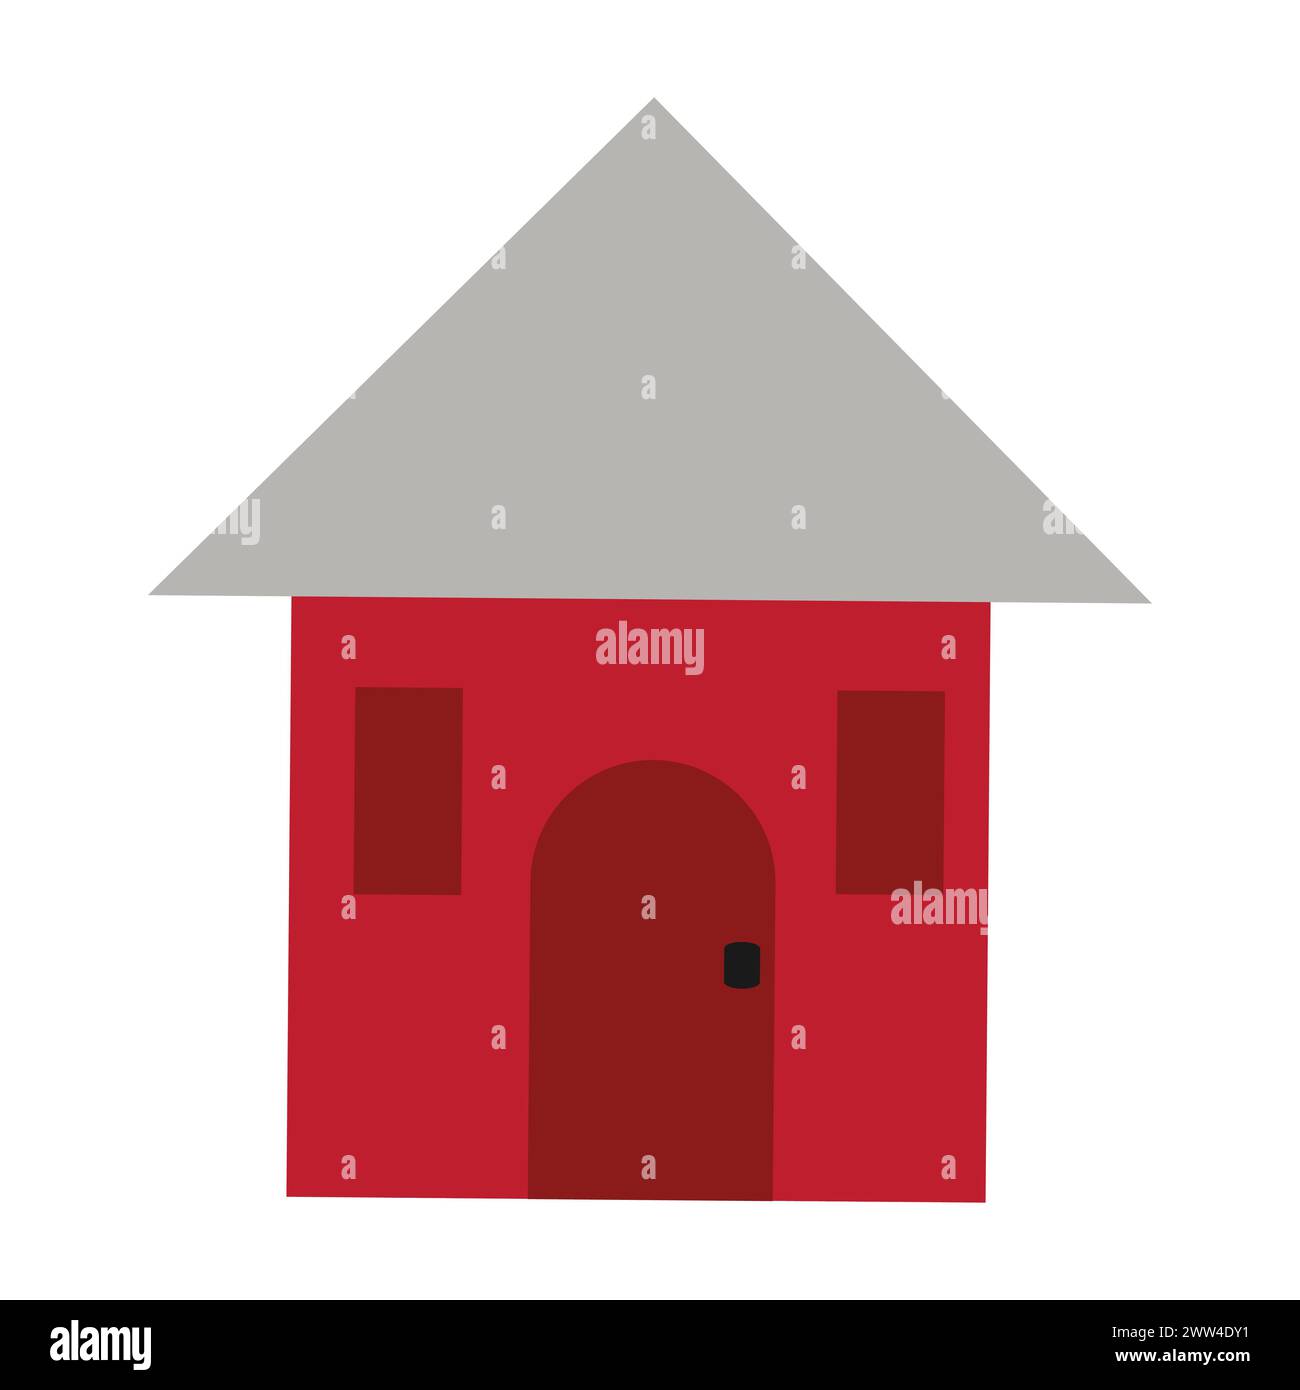 Kleines Rotes Haus Mit Grauem Dreiecksdach Stock Vektor